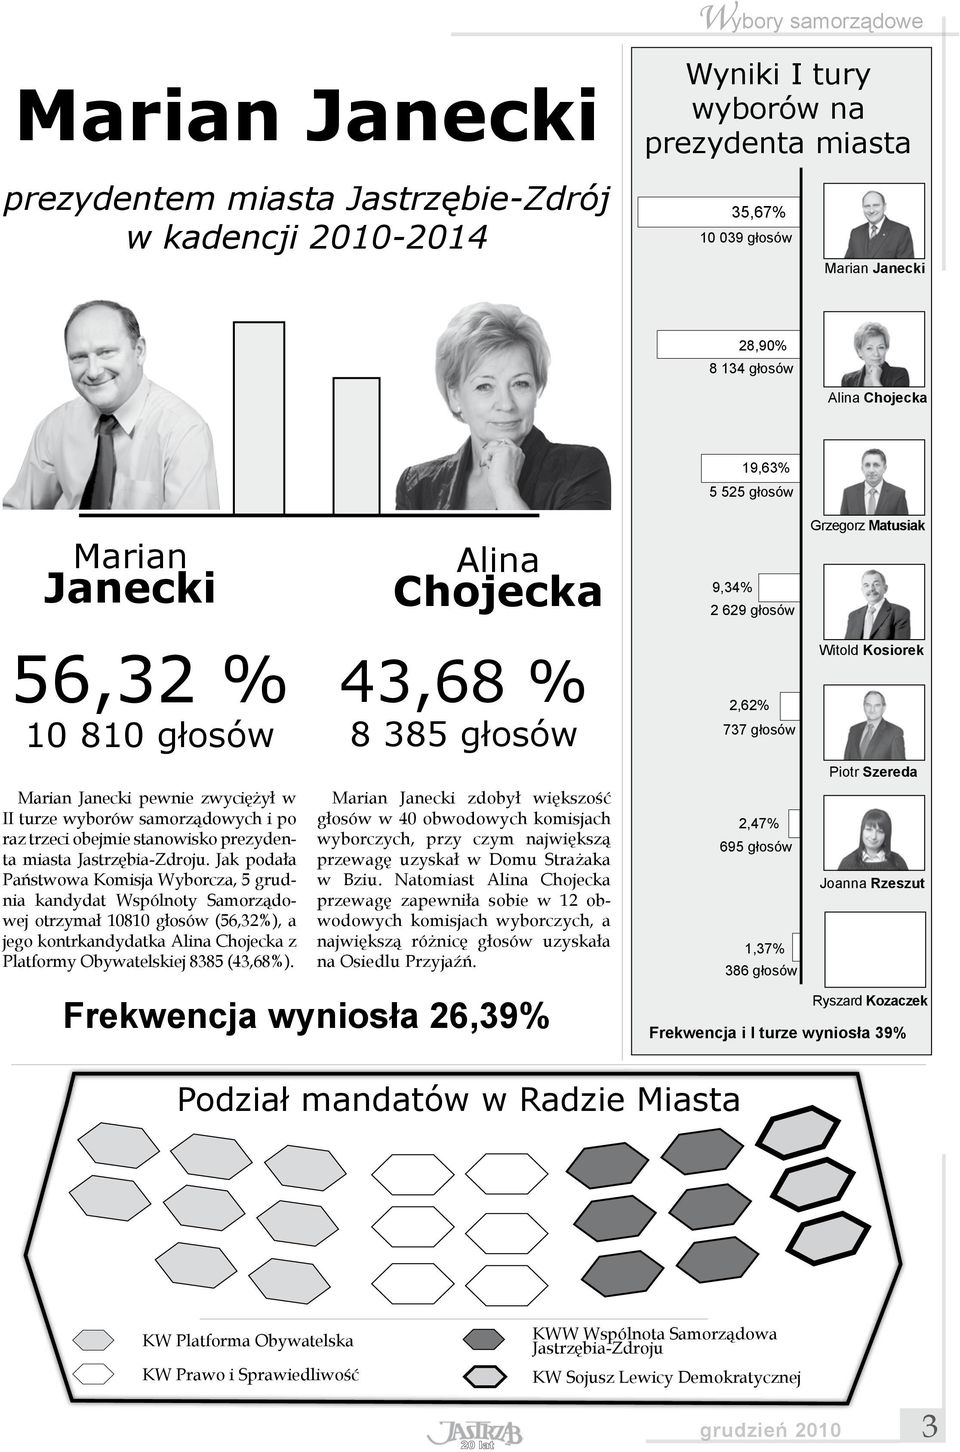 zwyciężył w II turze wyborów samorządowych i po raz trzeci obejmie stanowisko prezydenta miasta Jastrzębia-Zdroju.